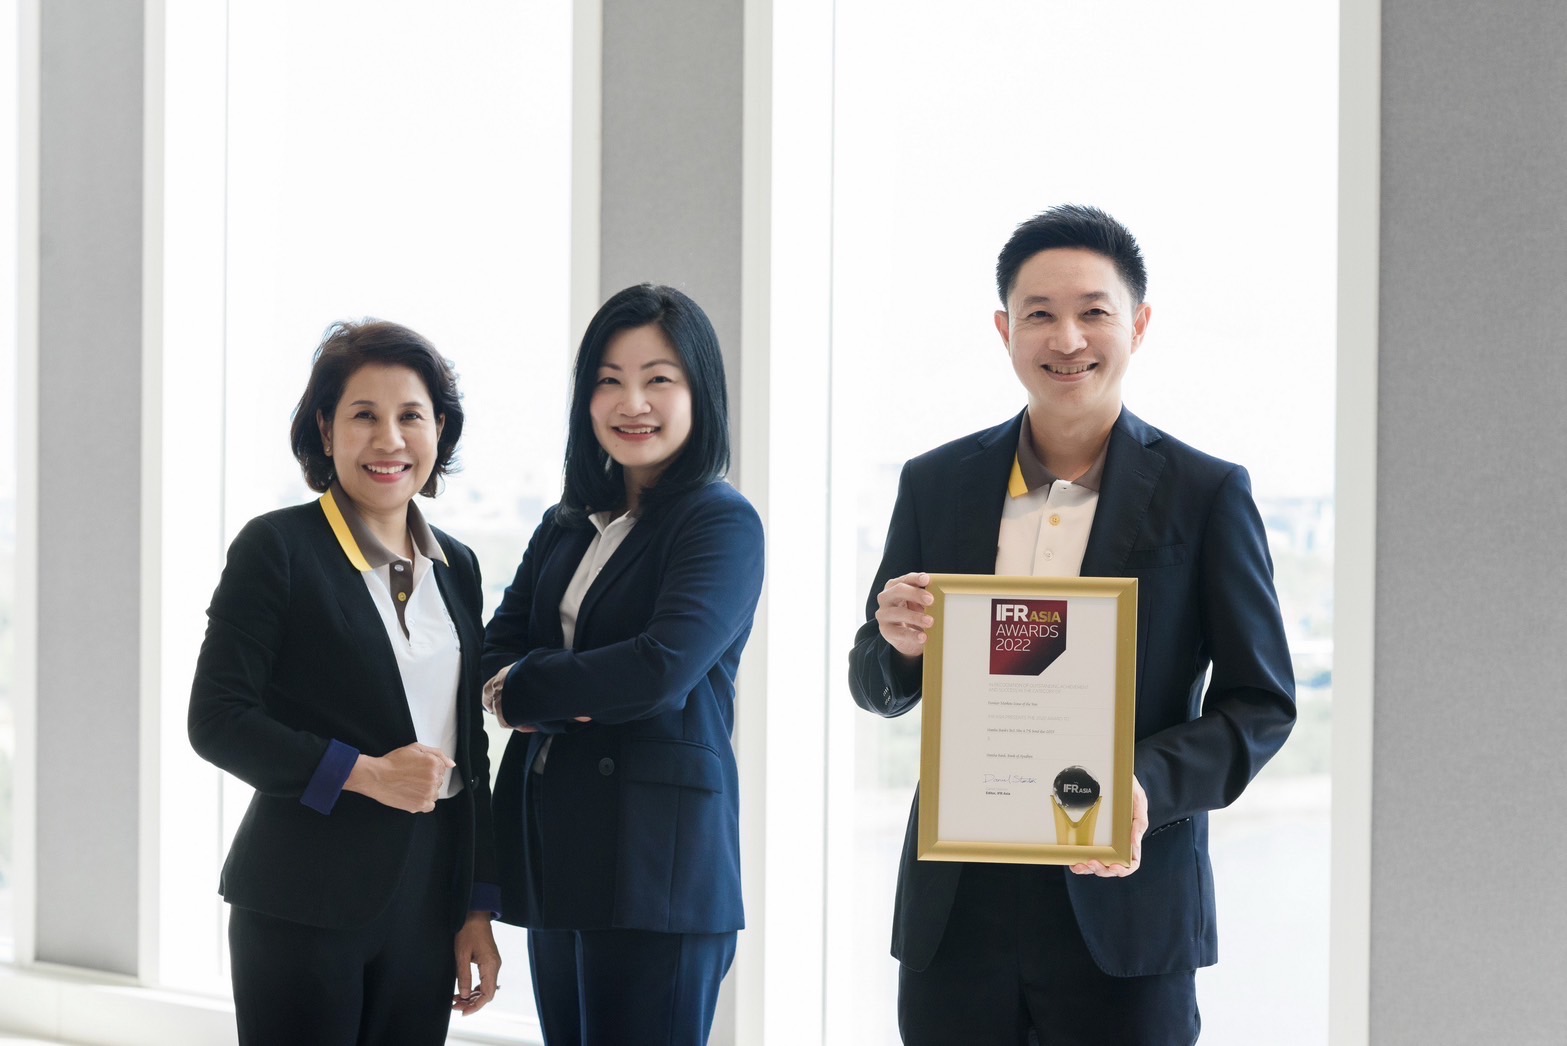 กรุงศรี คว้ารางวัล  “Frontier Markets Issue of the Year” จากงาน IFR Asia Awards